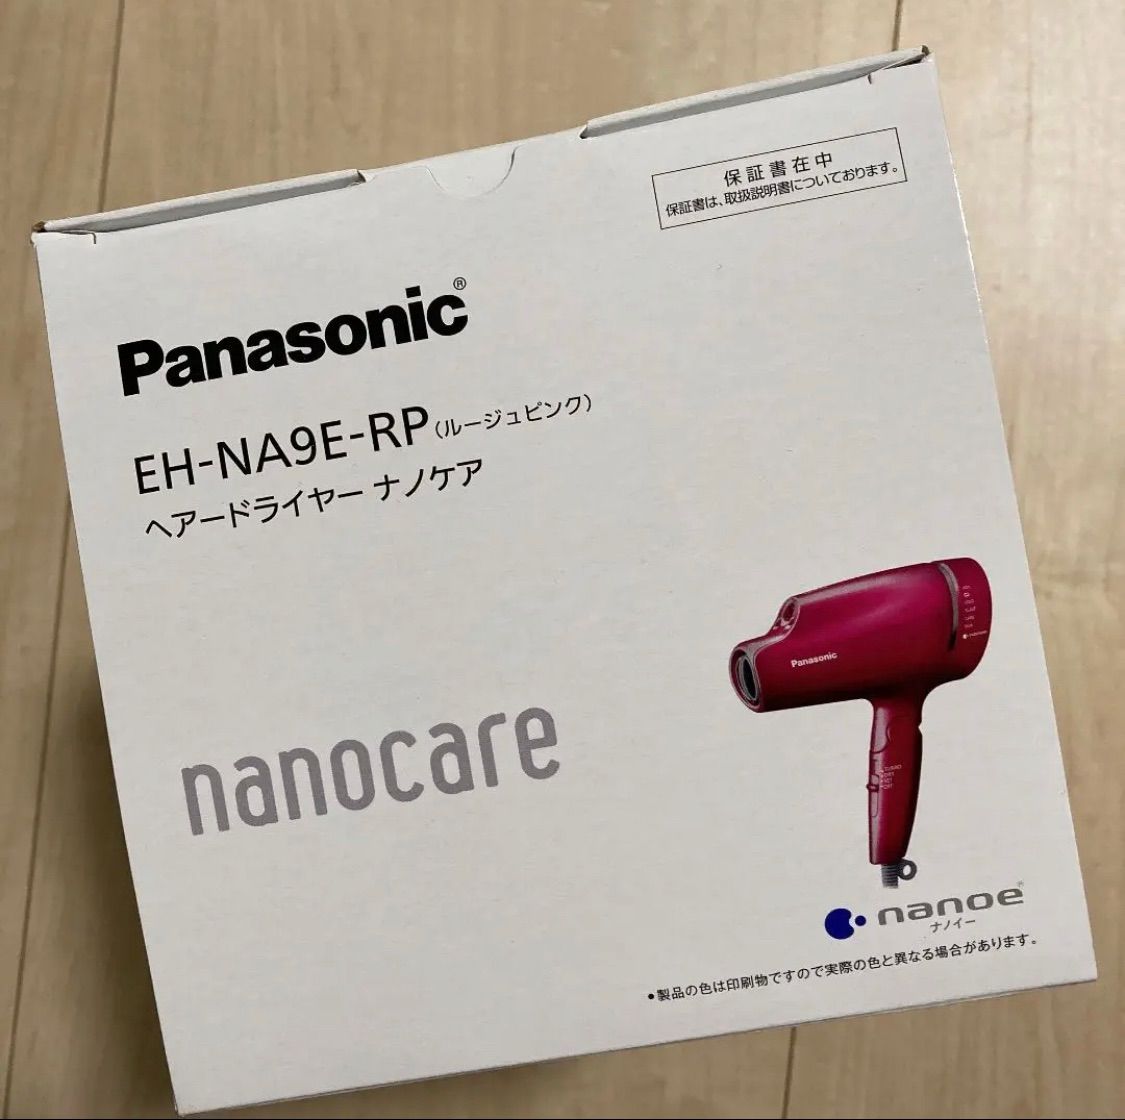 アウトレット用品 Panasonic ナノケア ヘアードライヤー EH-NA9E-RP